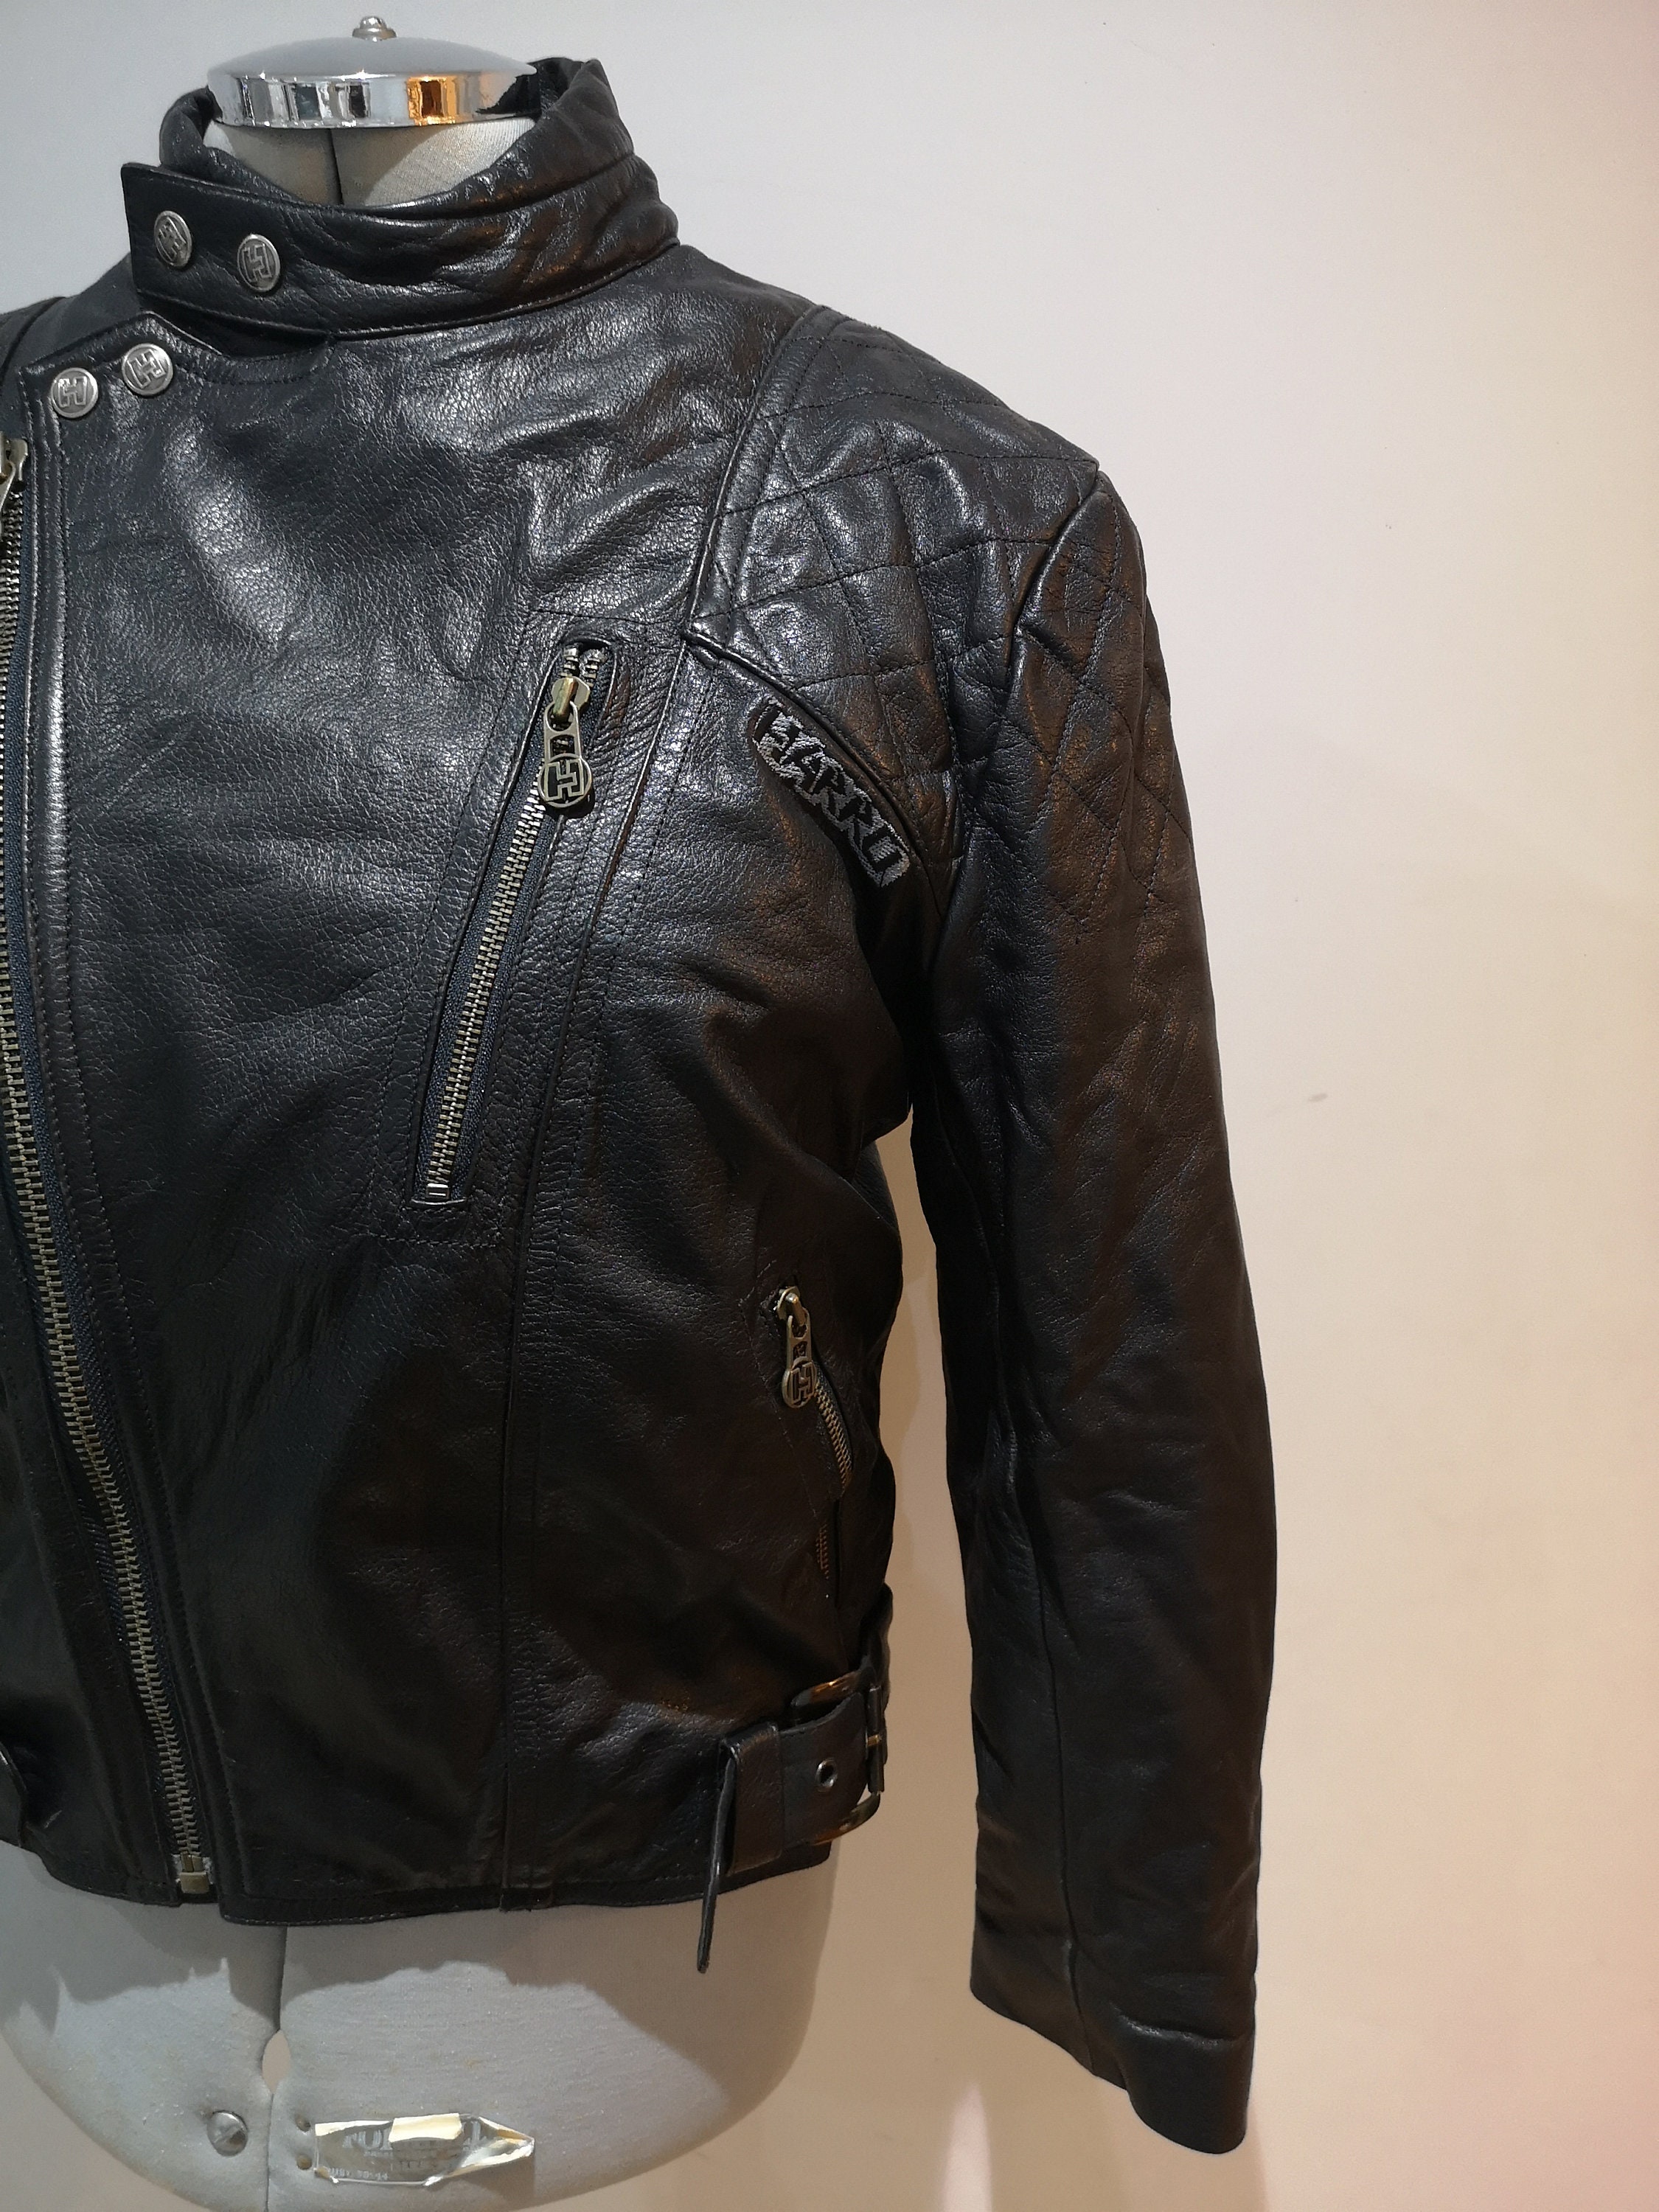 Vintage Black Leather Biker Jacket HARRO German Motorcycle - Etsy UK